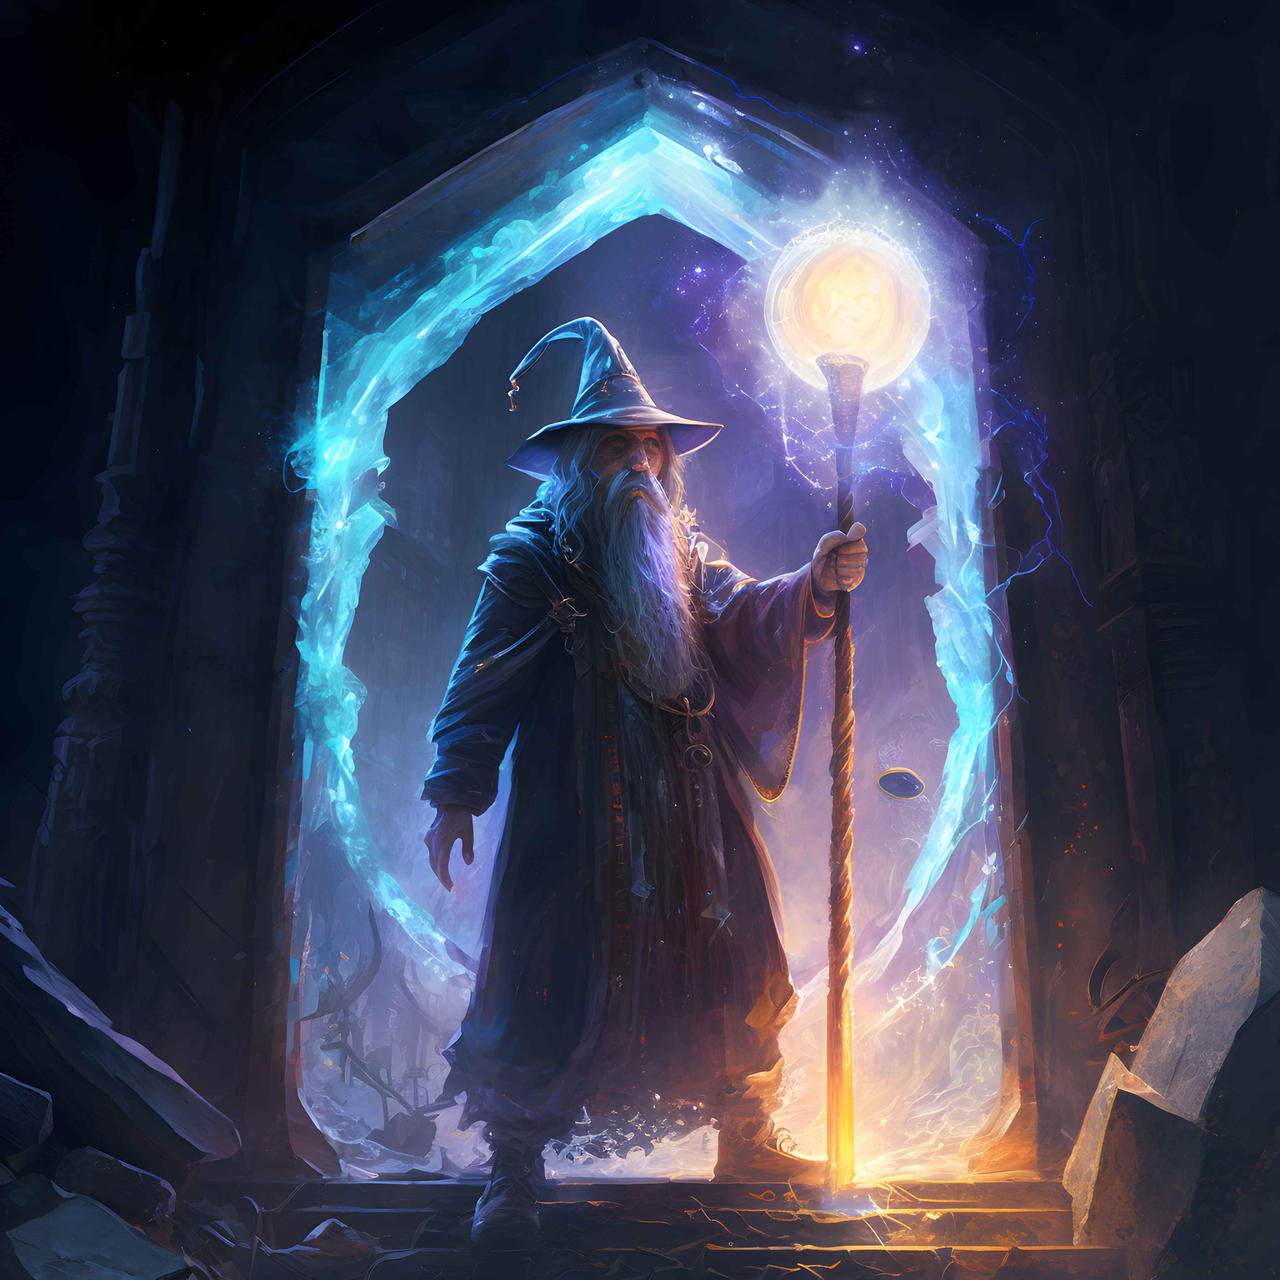 Магия в картинках - Страница 6 The_wizard_and_the_portal_by_fiulo_dfqn7dt-fullview.jpg?token=eyJ0eXAiOiJKV1QiLCJhbGciOiJIUzI1NiJ9.eyJzdWIiOiJ1cm46YXBwOjdlMGQxODg5ODIyNjQzNzNhNWYwZDQxNWVhMGQyNmUwIiwiaXNzIjoidXJuOmFwcDo3ZTBkMTg4OTgyMjY0MzczYTVmMGQ0MTVlYTBkMjZlMCIsIm9iaiI6W1t7ImhlaWdodCI6Ijw9MTI4MCIsInBhdGgiOiJcL2ZcLzA0NTY1NmUxLTIwNDgtNGIzOS05Zjk5LWVhNWViNDFkOTY1MVwvZGZxbjdkdC1iZmMwOWVkMC0yNmVkLTQyOTYtYjBkZC02YmViYjJlMzMwMjYuanBnIiwid2lkdGgiOiI8PTEyODAifV1dLCJhdWQiOlsidXJuOnNlcnZpY2U6aW1hZ2Uub3BlcmF0aW9ucyJdfQ